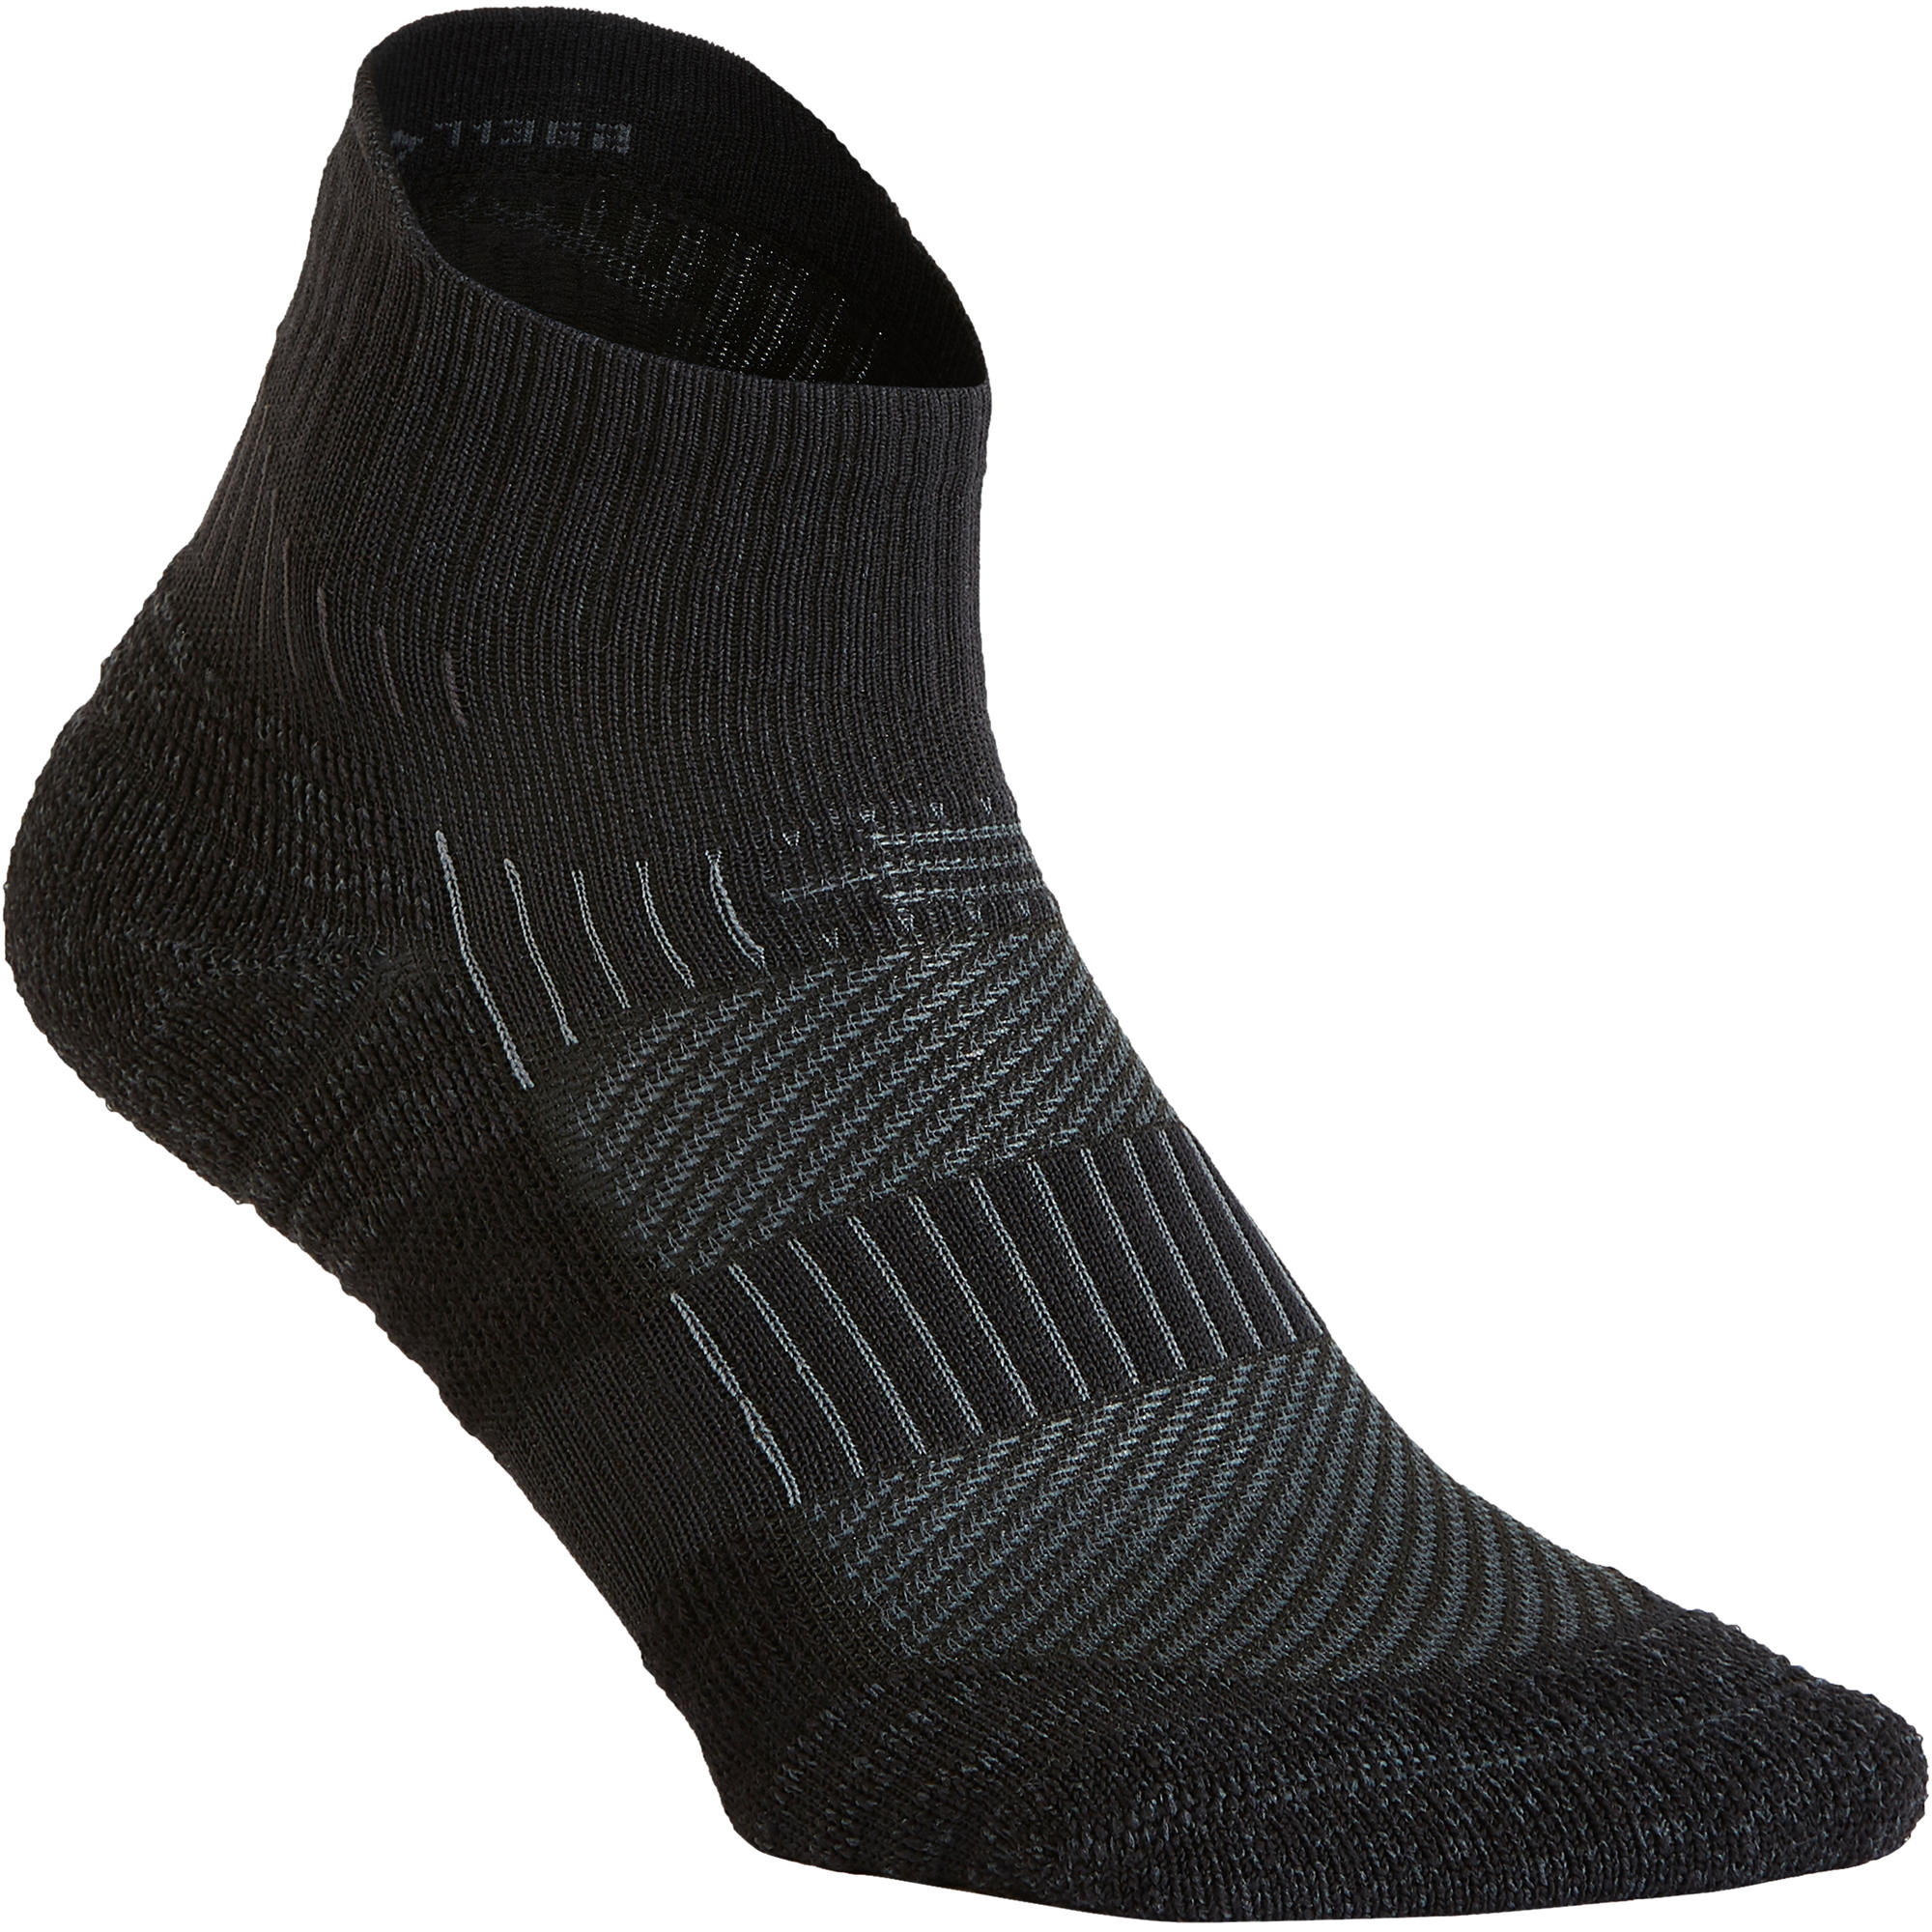 WS 500 Low fitness walking socks - black | Newfeel